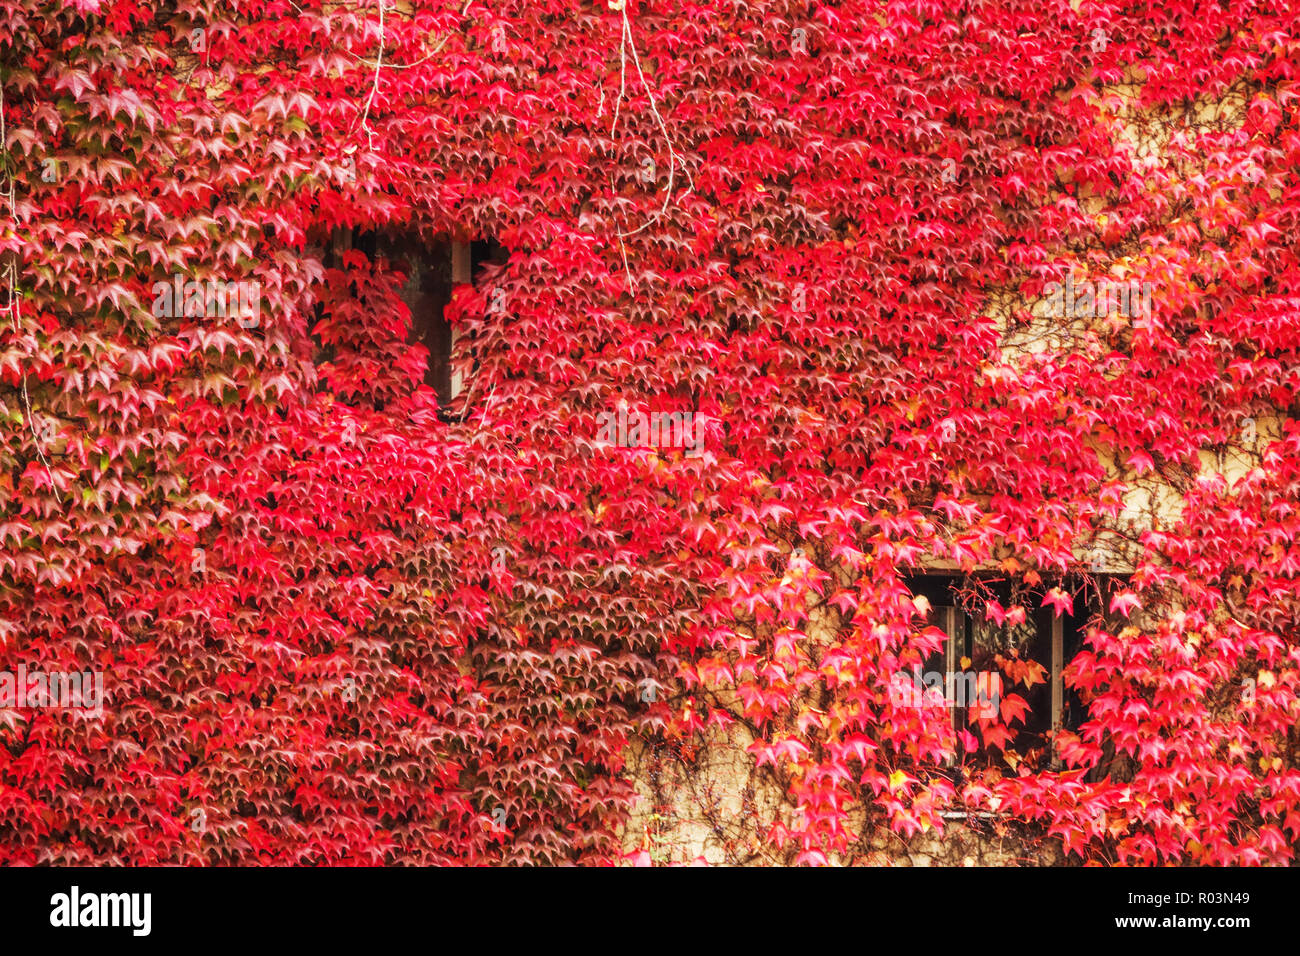 Boston Ivy window Parthenocissus tricuspidata poussant sur un mur de maison, Vienne Autriche automne feuilles rouges grimpant plante grimpante couleurs d'automne Banque D'Images